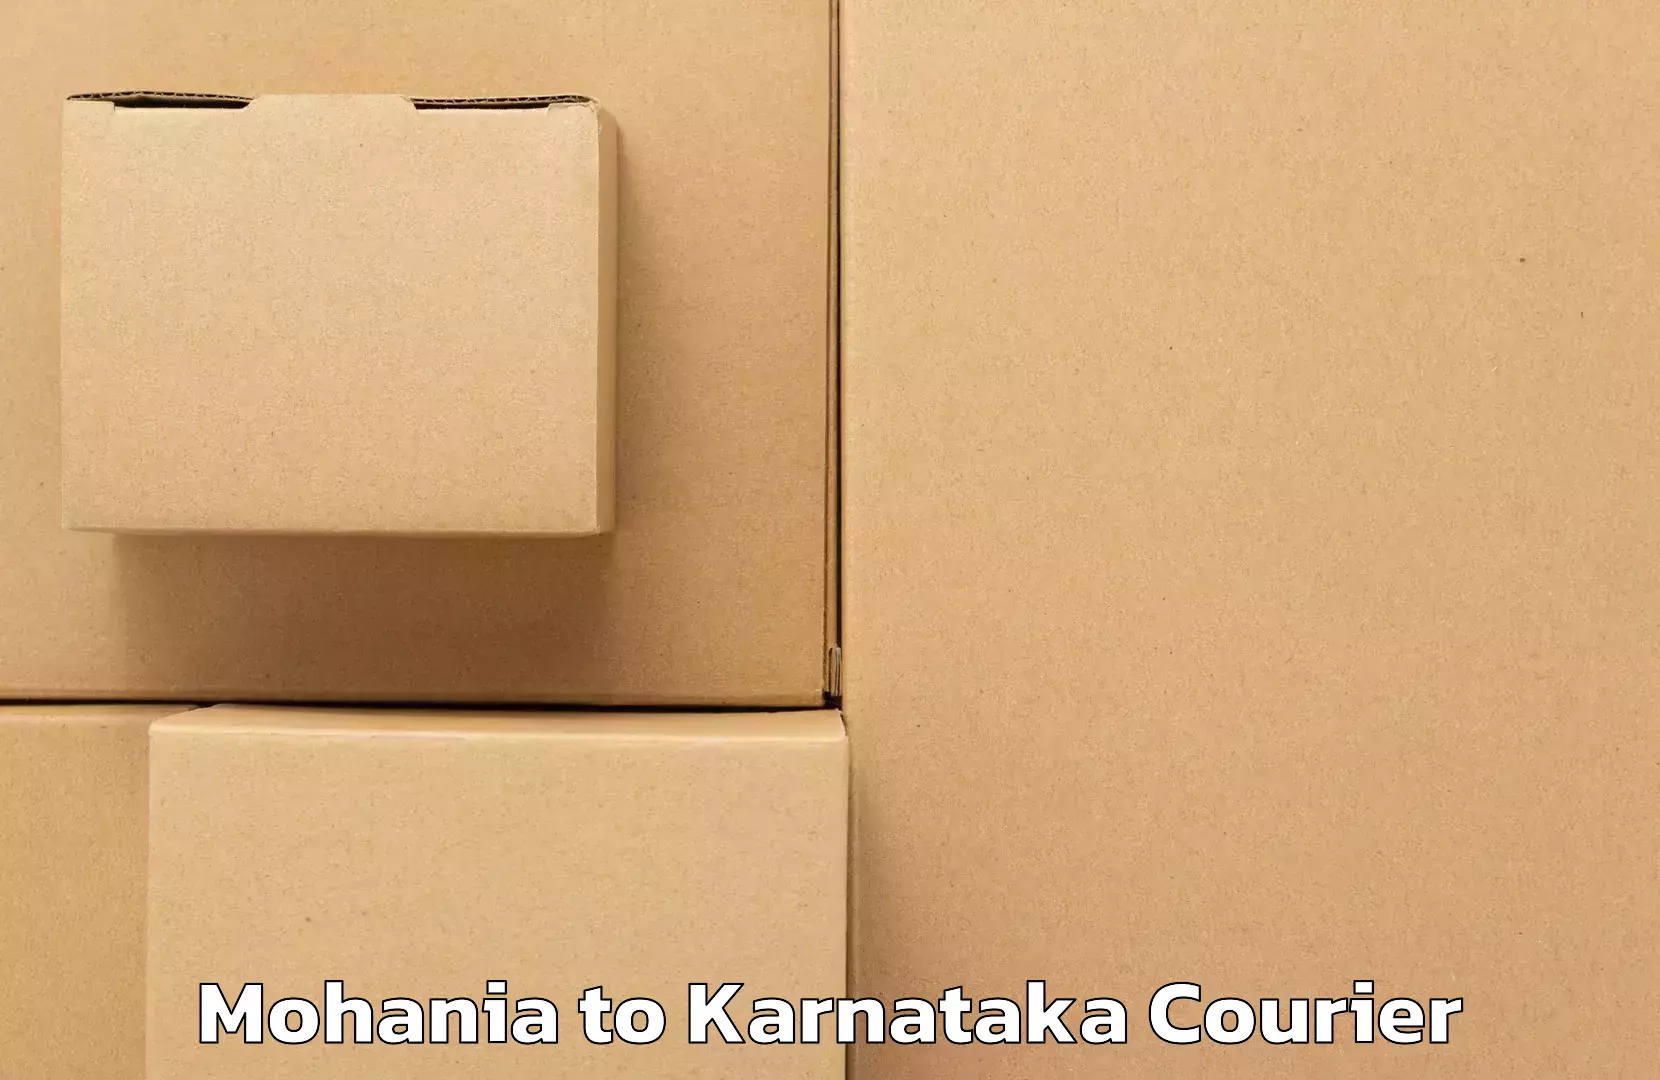 Next-day freight services Mohania to Karnataka